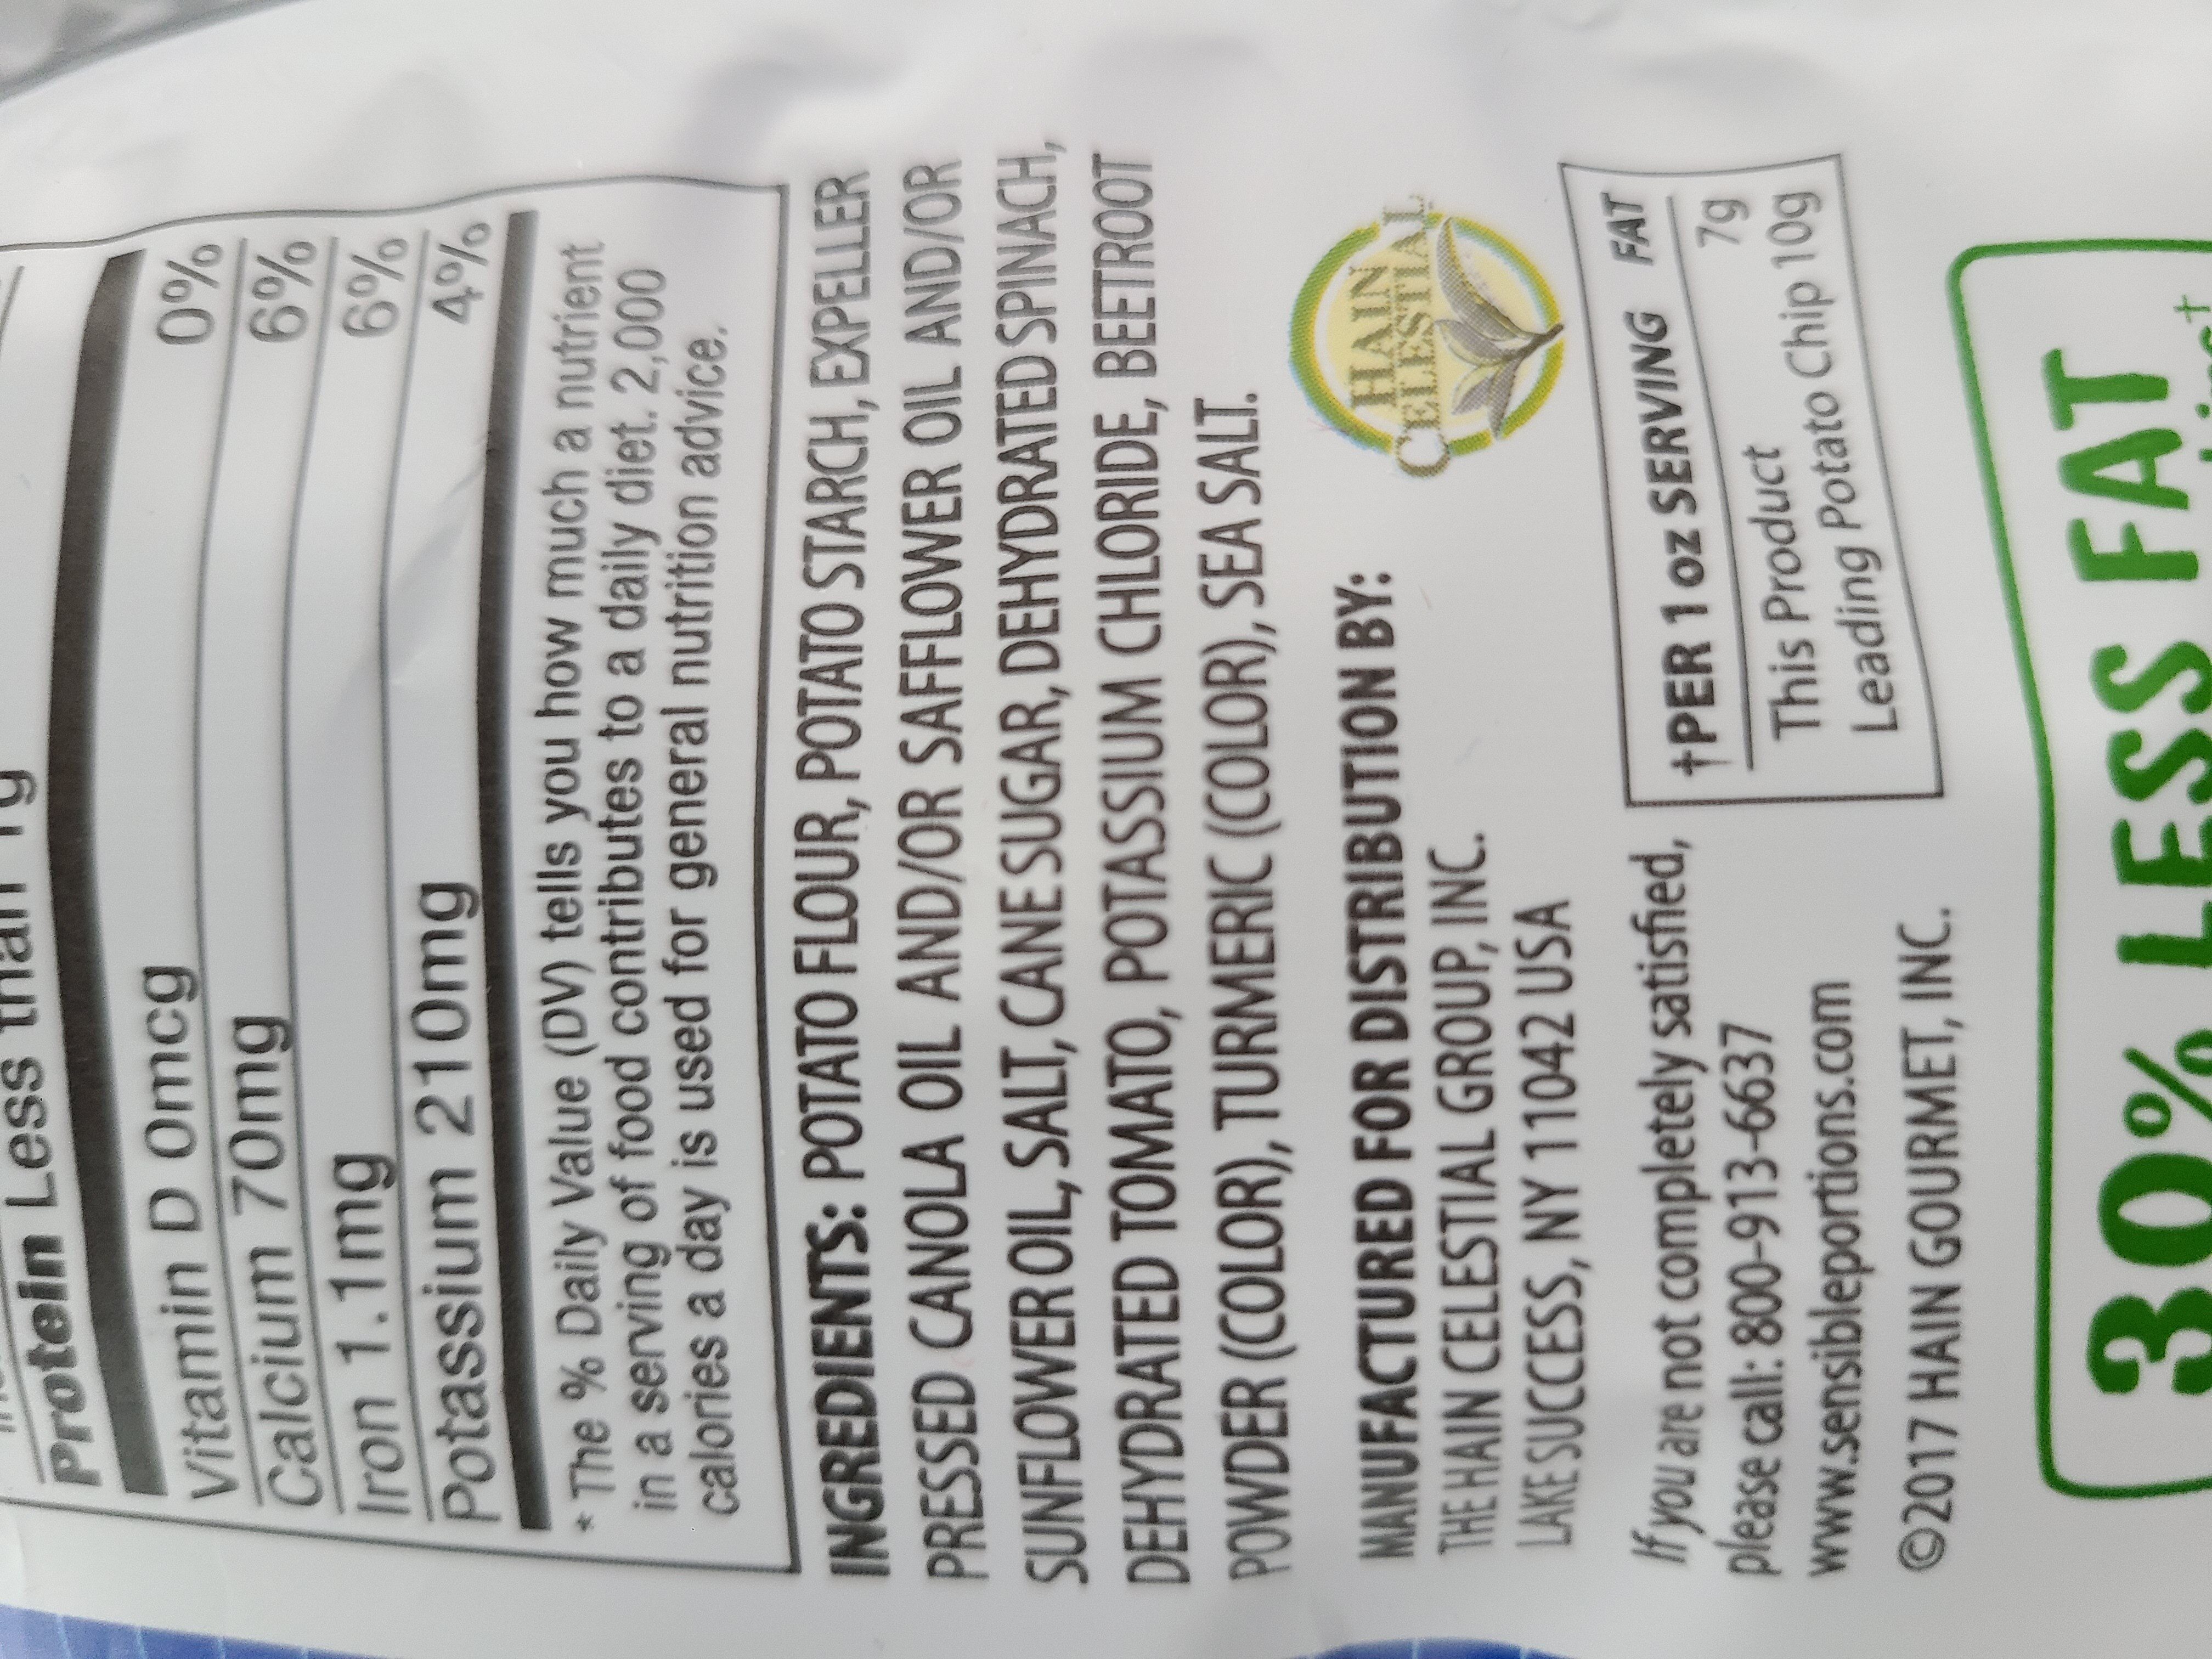 Garden veggie chips - Ingredients